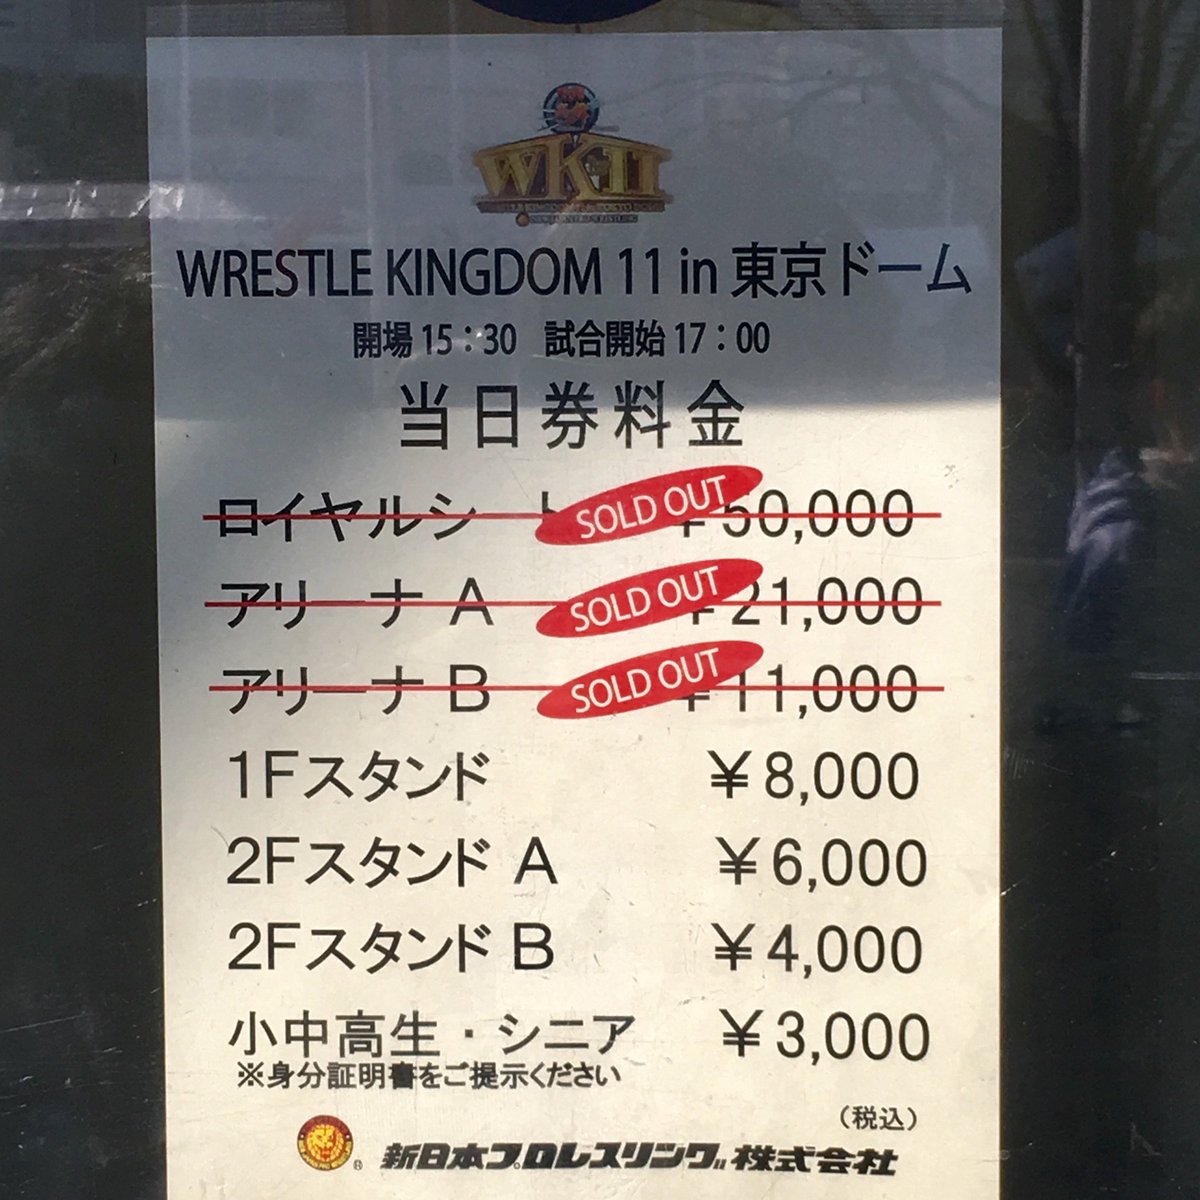 新日本プロレスリング株式会社 ただいまの販売状況はコチラ 1月4日 水 東京ドームの当日券は 22番ゲート前 当日券売場で絶賛販売中 2fスタンドaは残りわずか T Co Zq6nyonmj2 Njwk11 Njpw